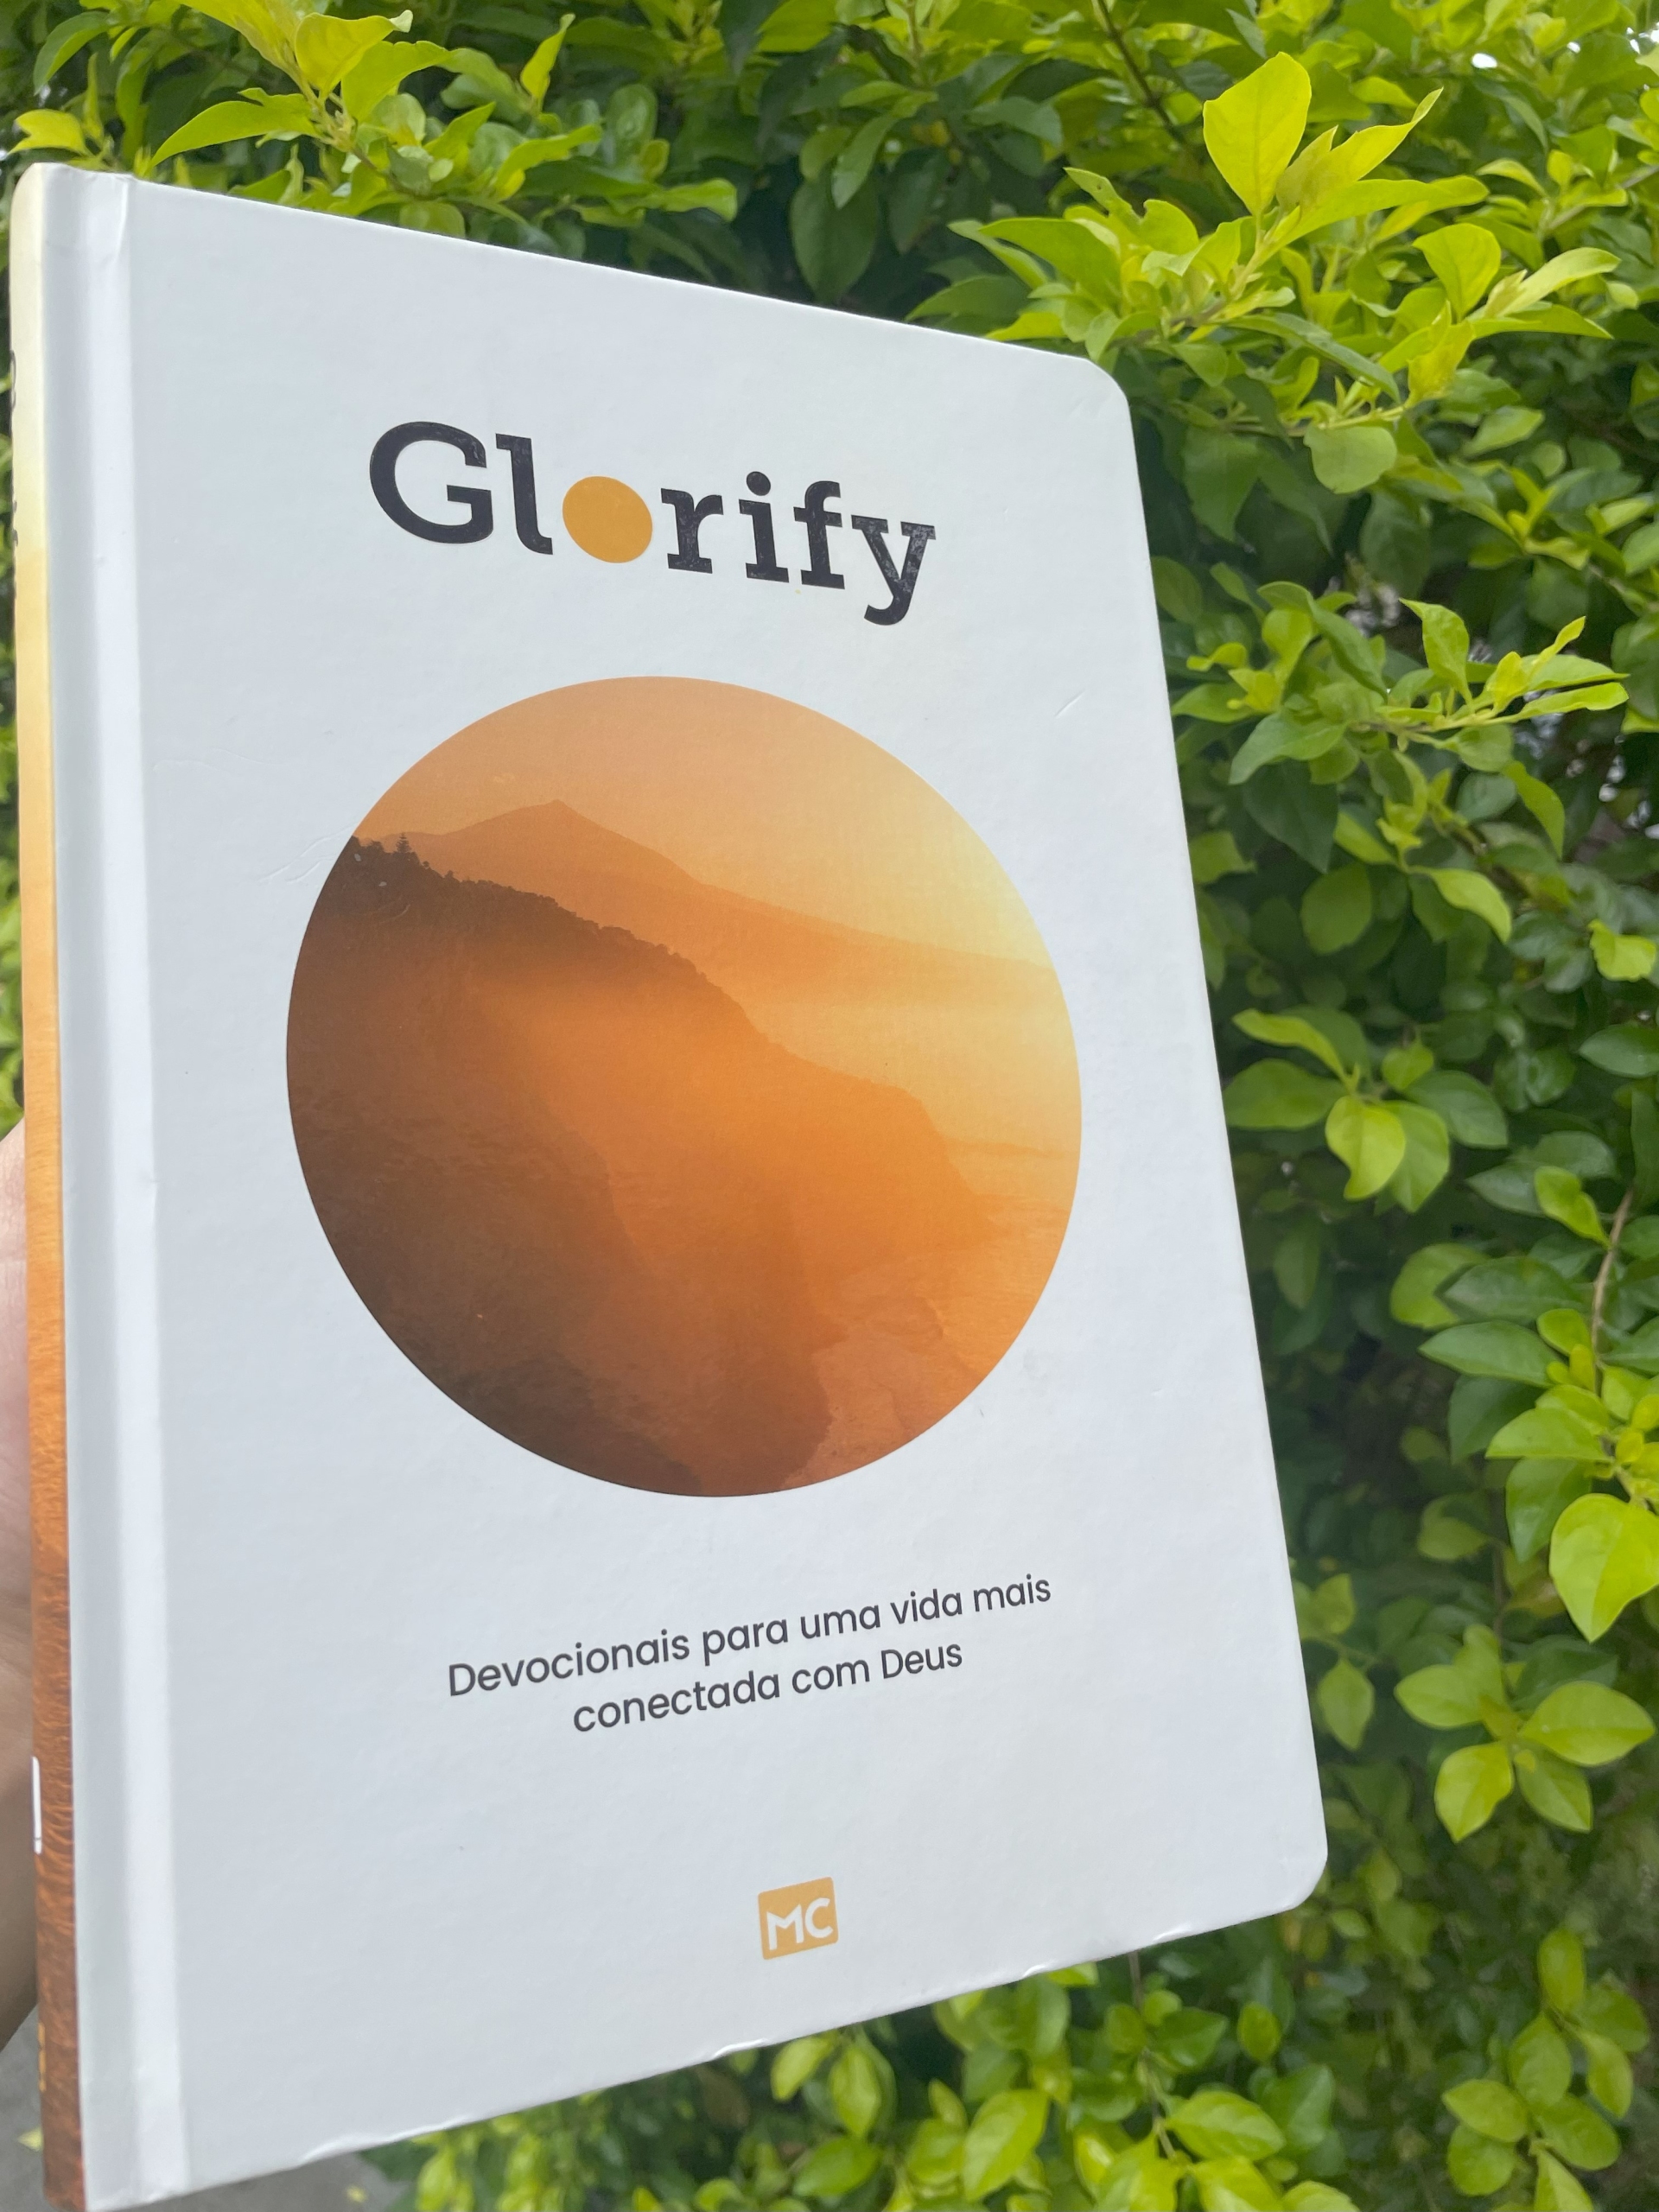 Glorify lança podcast para acrescentar mais de Deus à vida